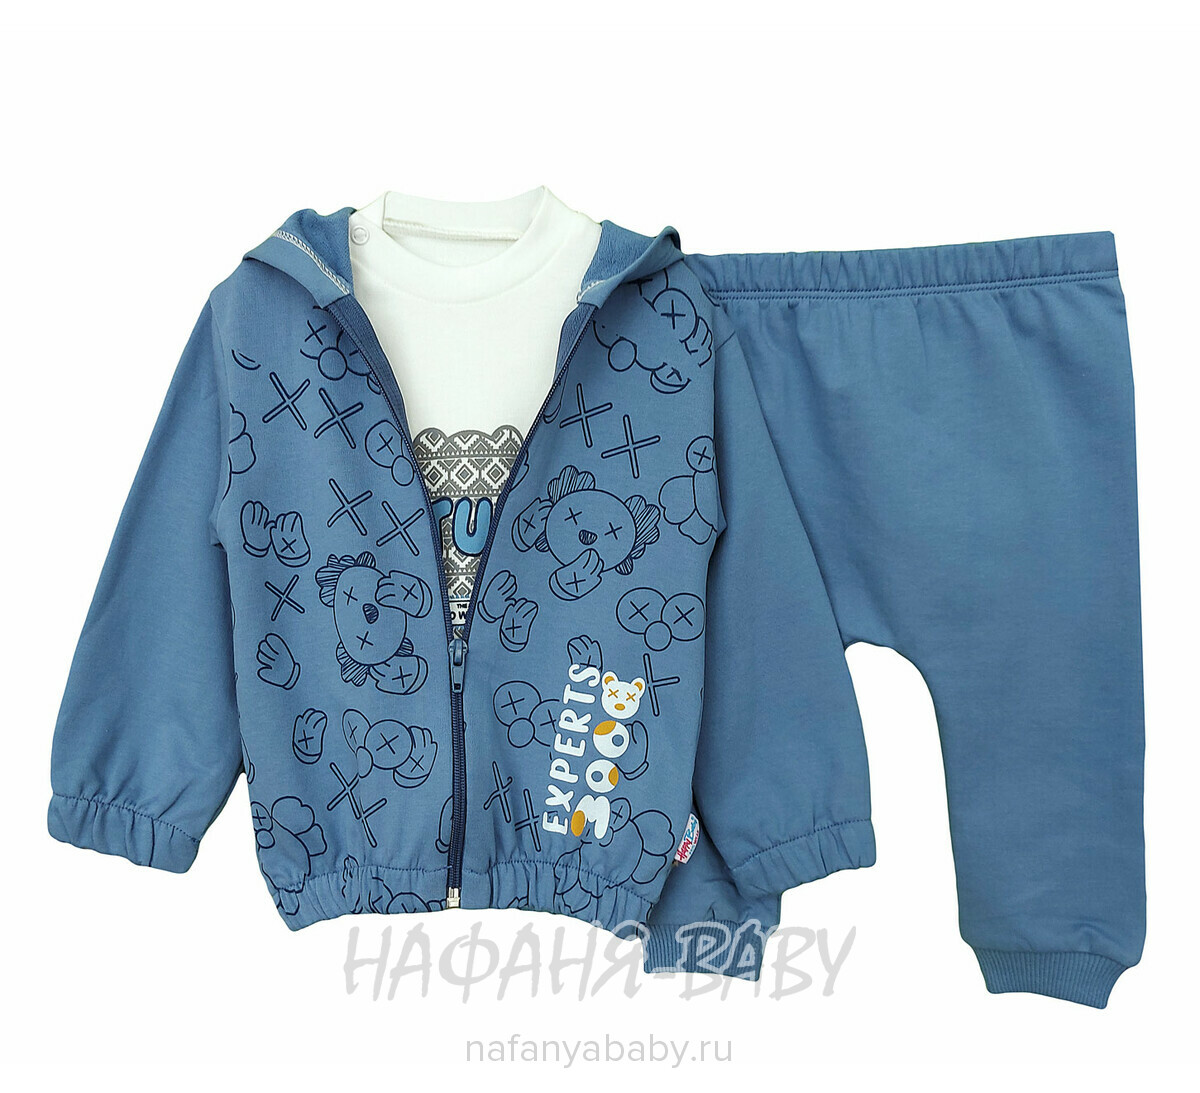 Детский костюм Happy Baby арт. 12021 от 6 до 24 мес, цвет сине-серый, оптом Турция